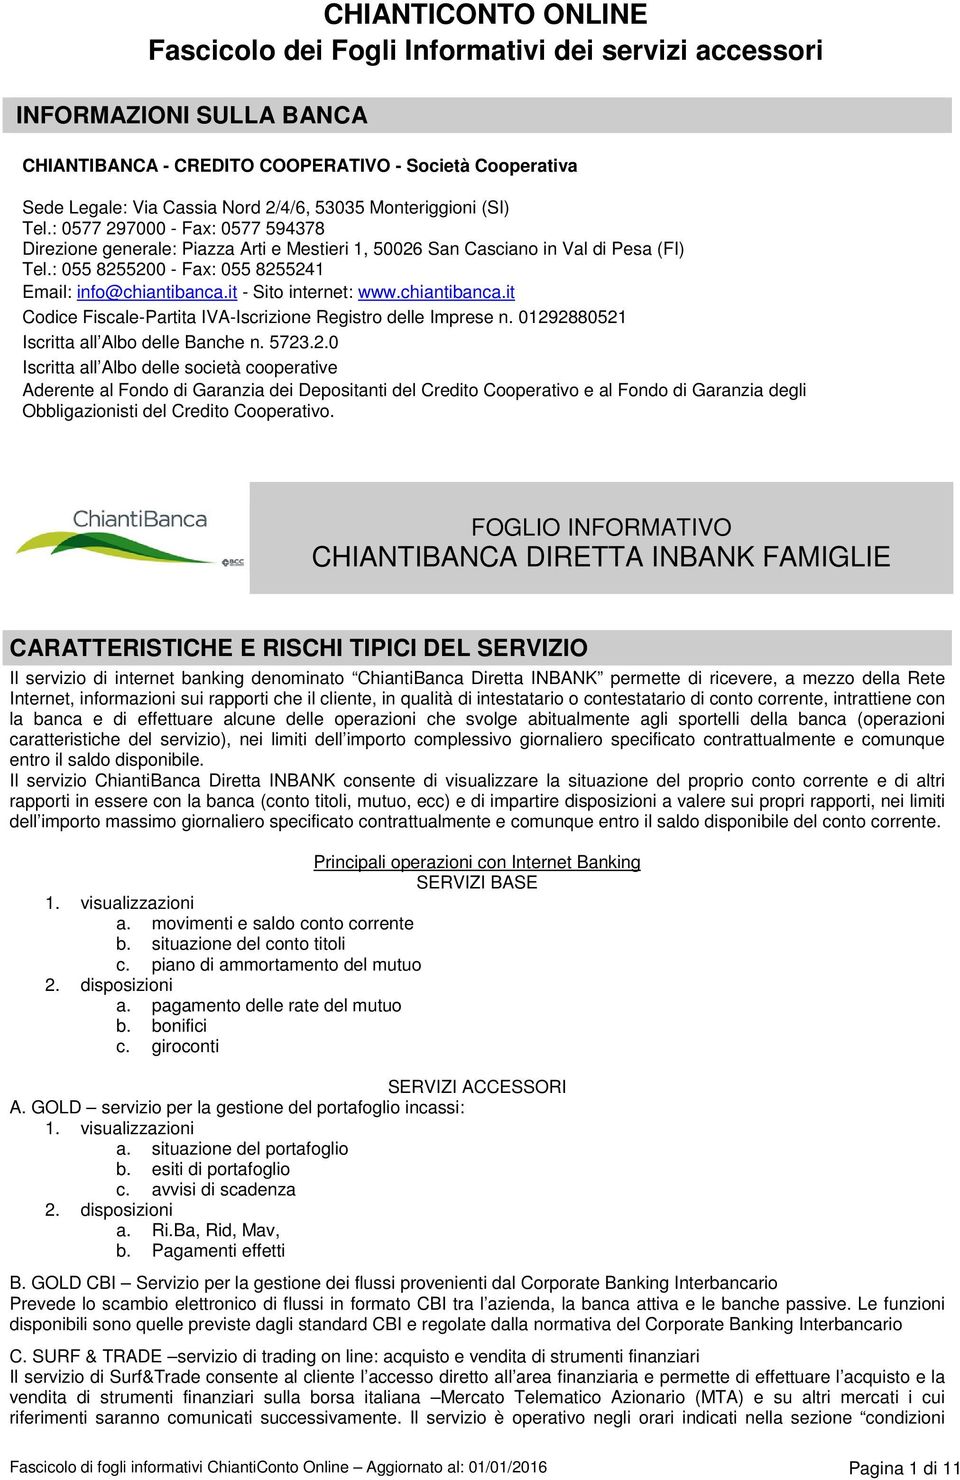 : 055 8255200 - Fax: 055 8255241 Email: info@chiantibanca.it - Sito internet: www.chiantibanca.it Codice Fiscale-Partita IVA-Iscrizione Registro delle Imprese n.